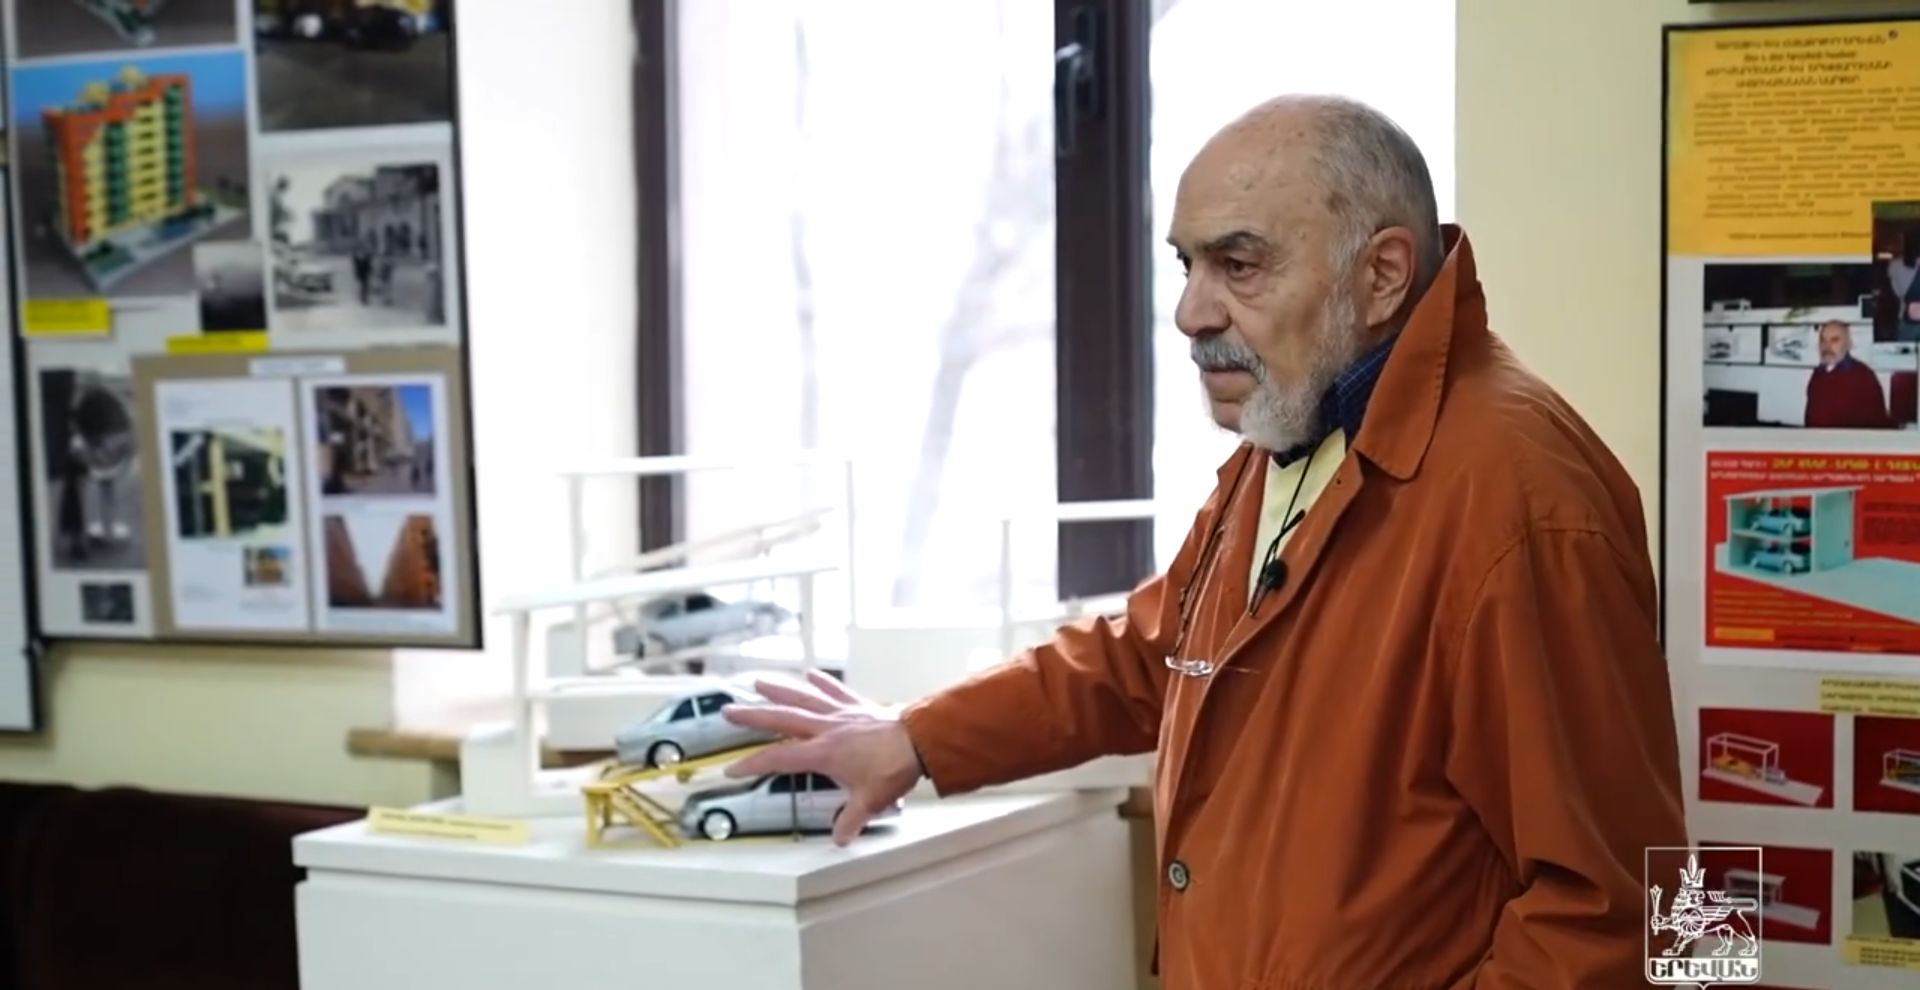 Երևանում բացվել է Վարդան Փենեսյանի և Էդիկ Թանգյանի նախագծերի ցուցահանդեսը (տեսանյութ)